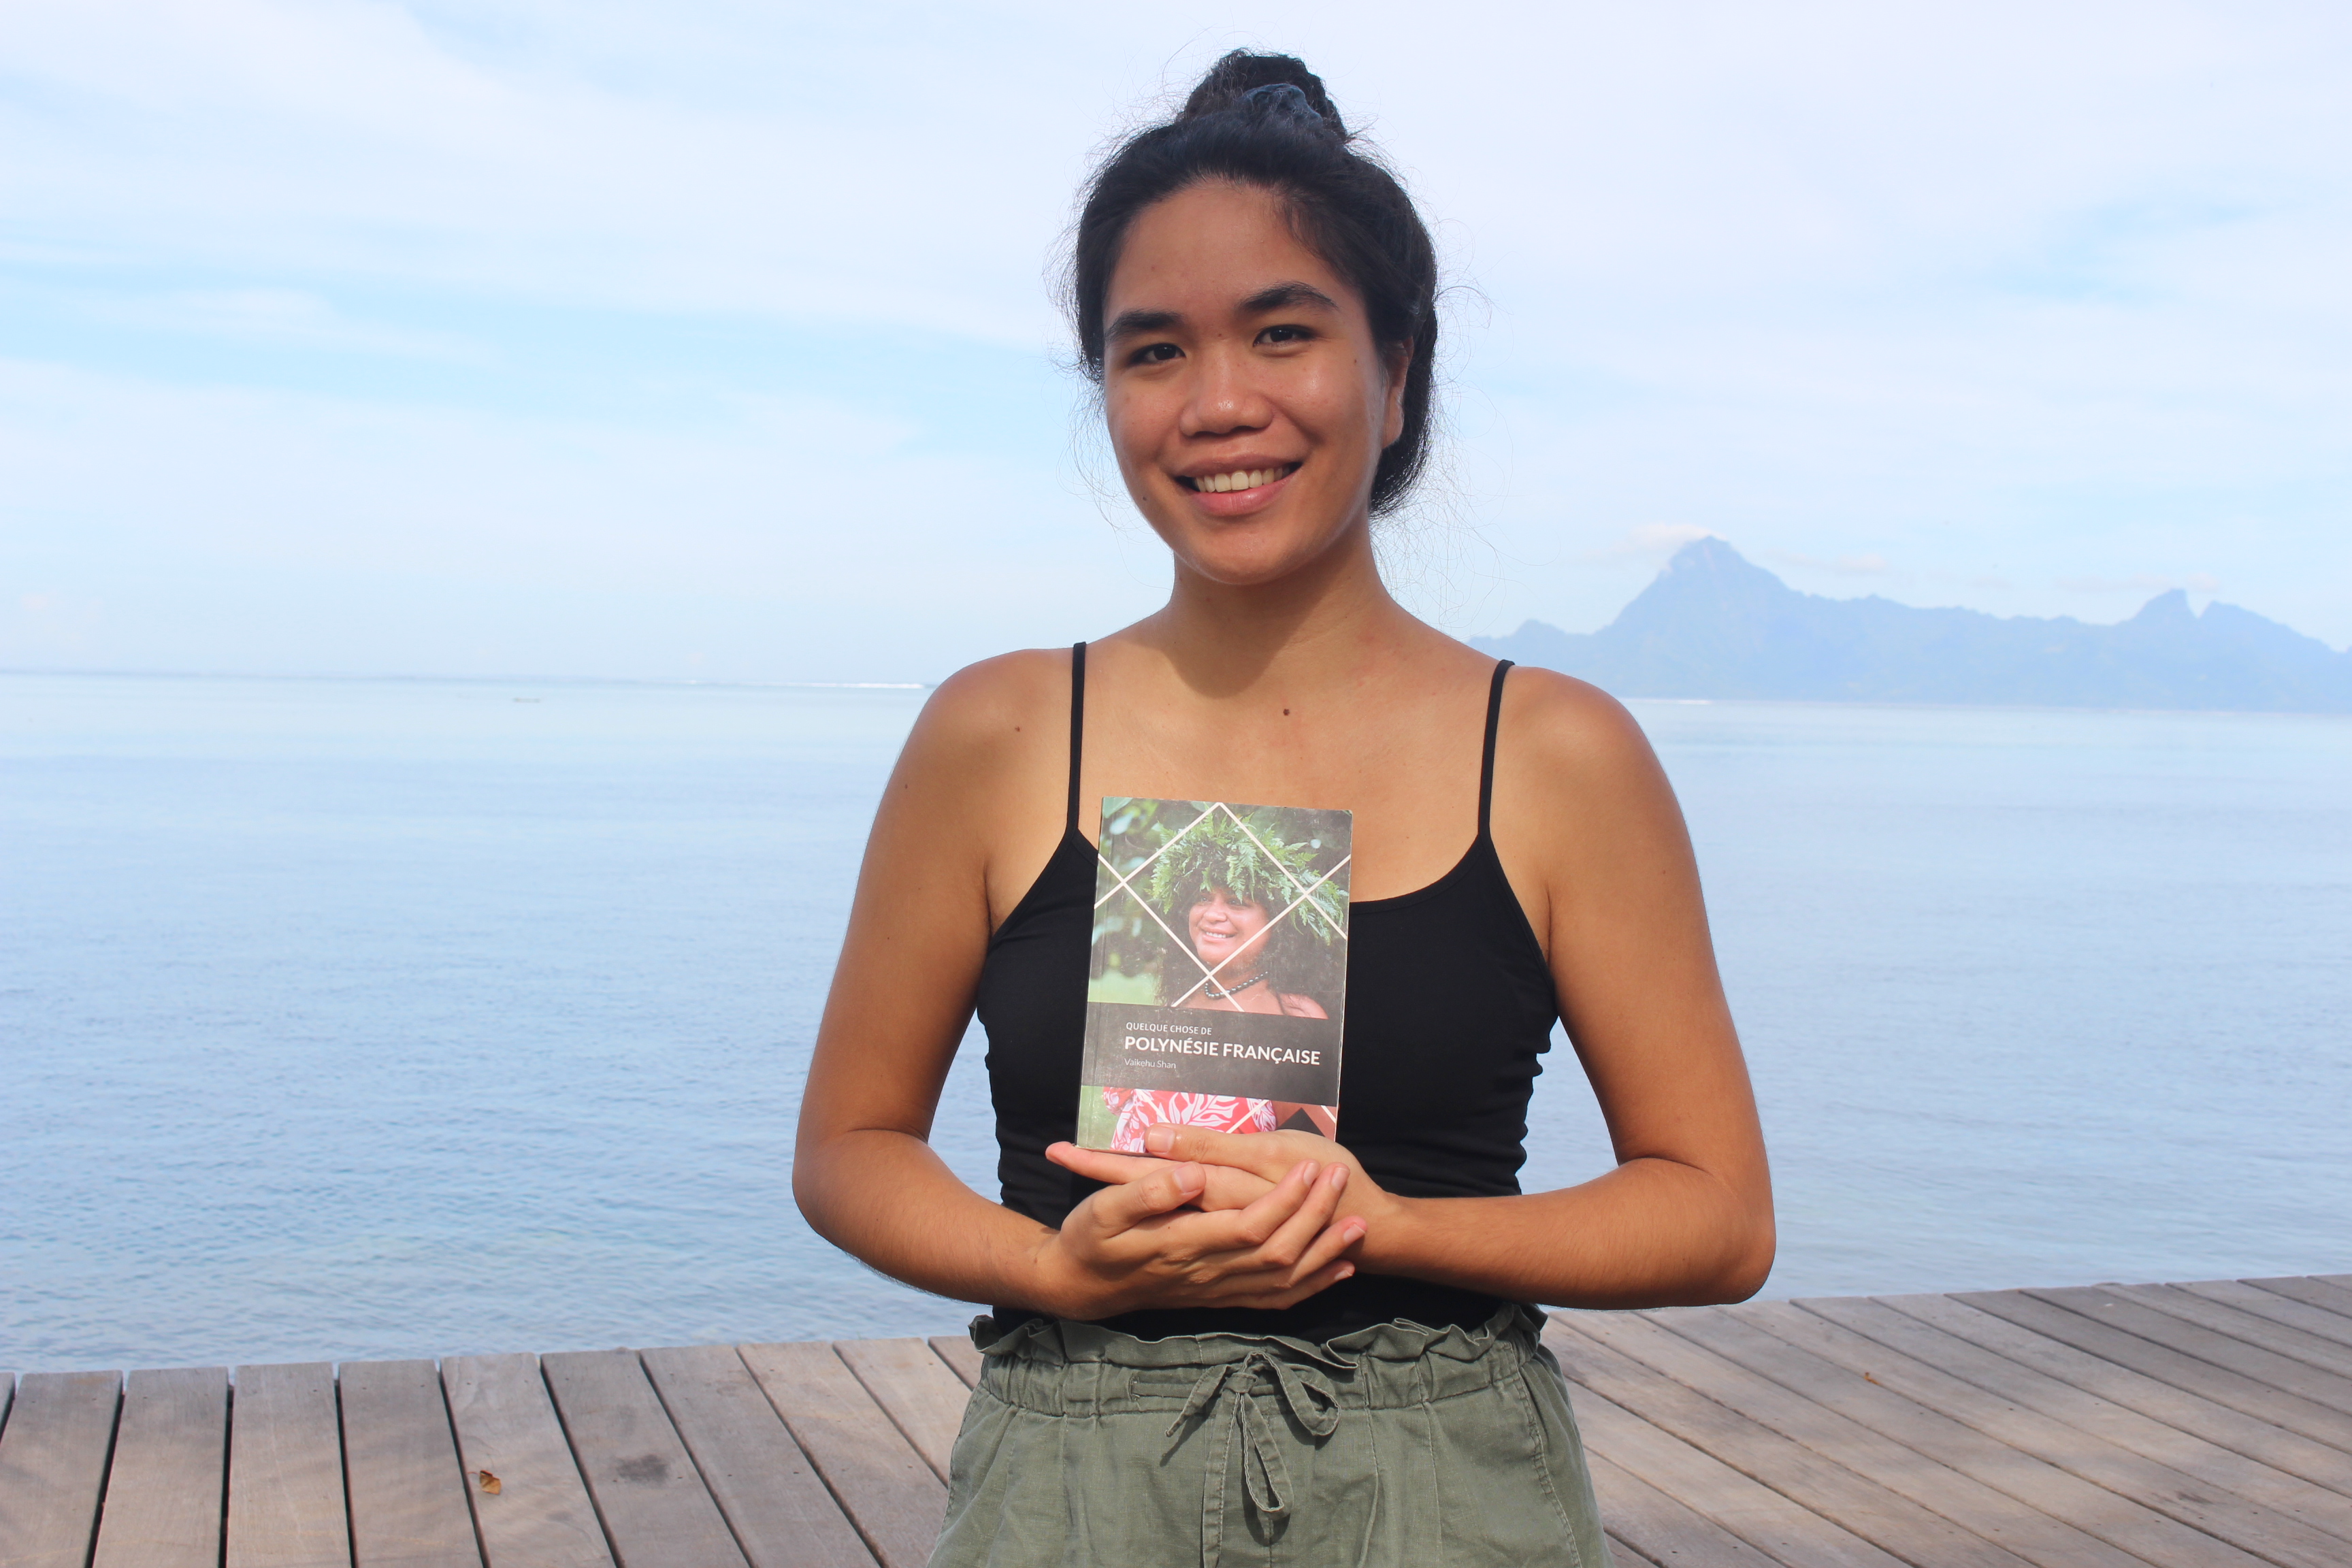 "Quelque chose de Polynésie française" : Un guide touristique, culturel et personnel